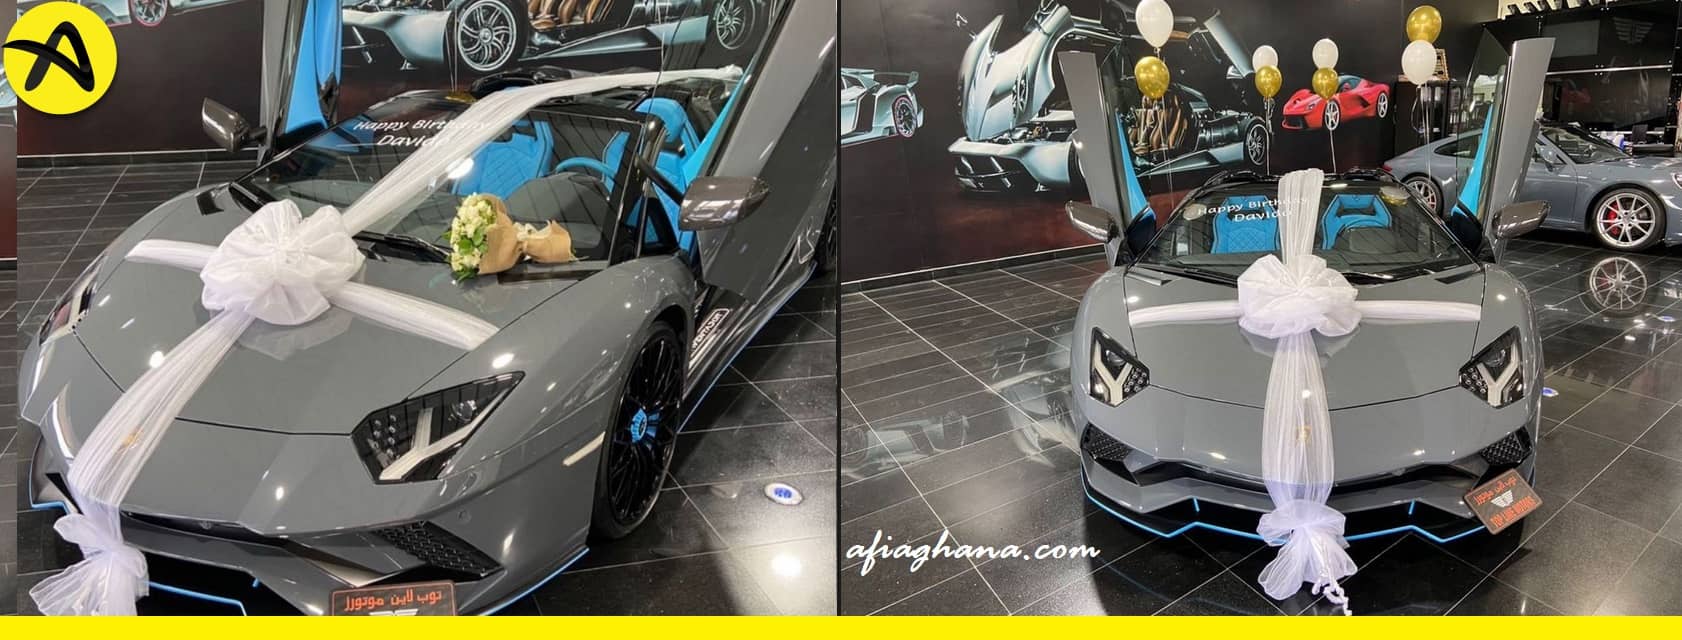 Davido Buys Brand New Lamborghini Aventador worth over $400,000 16